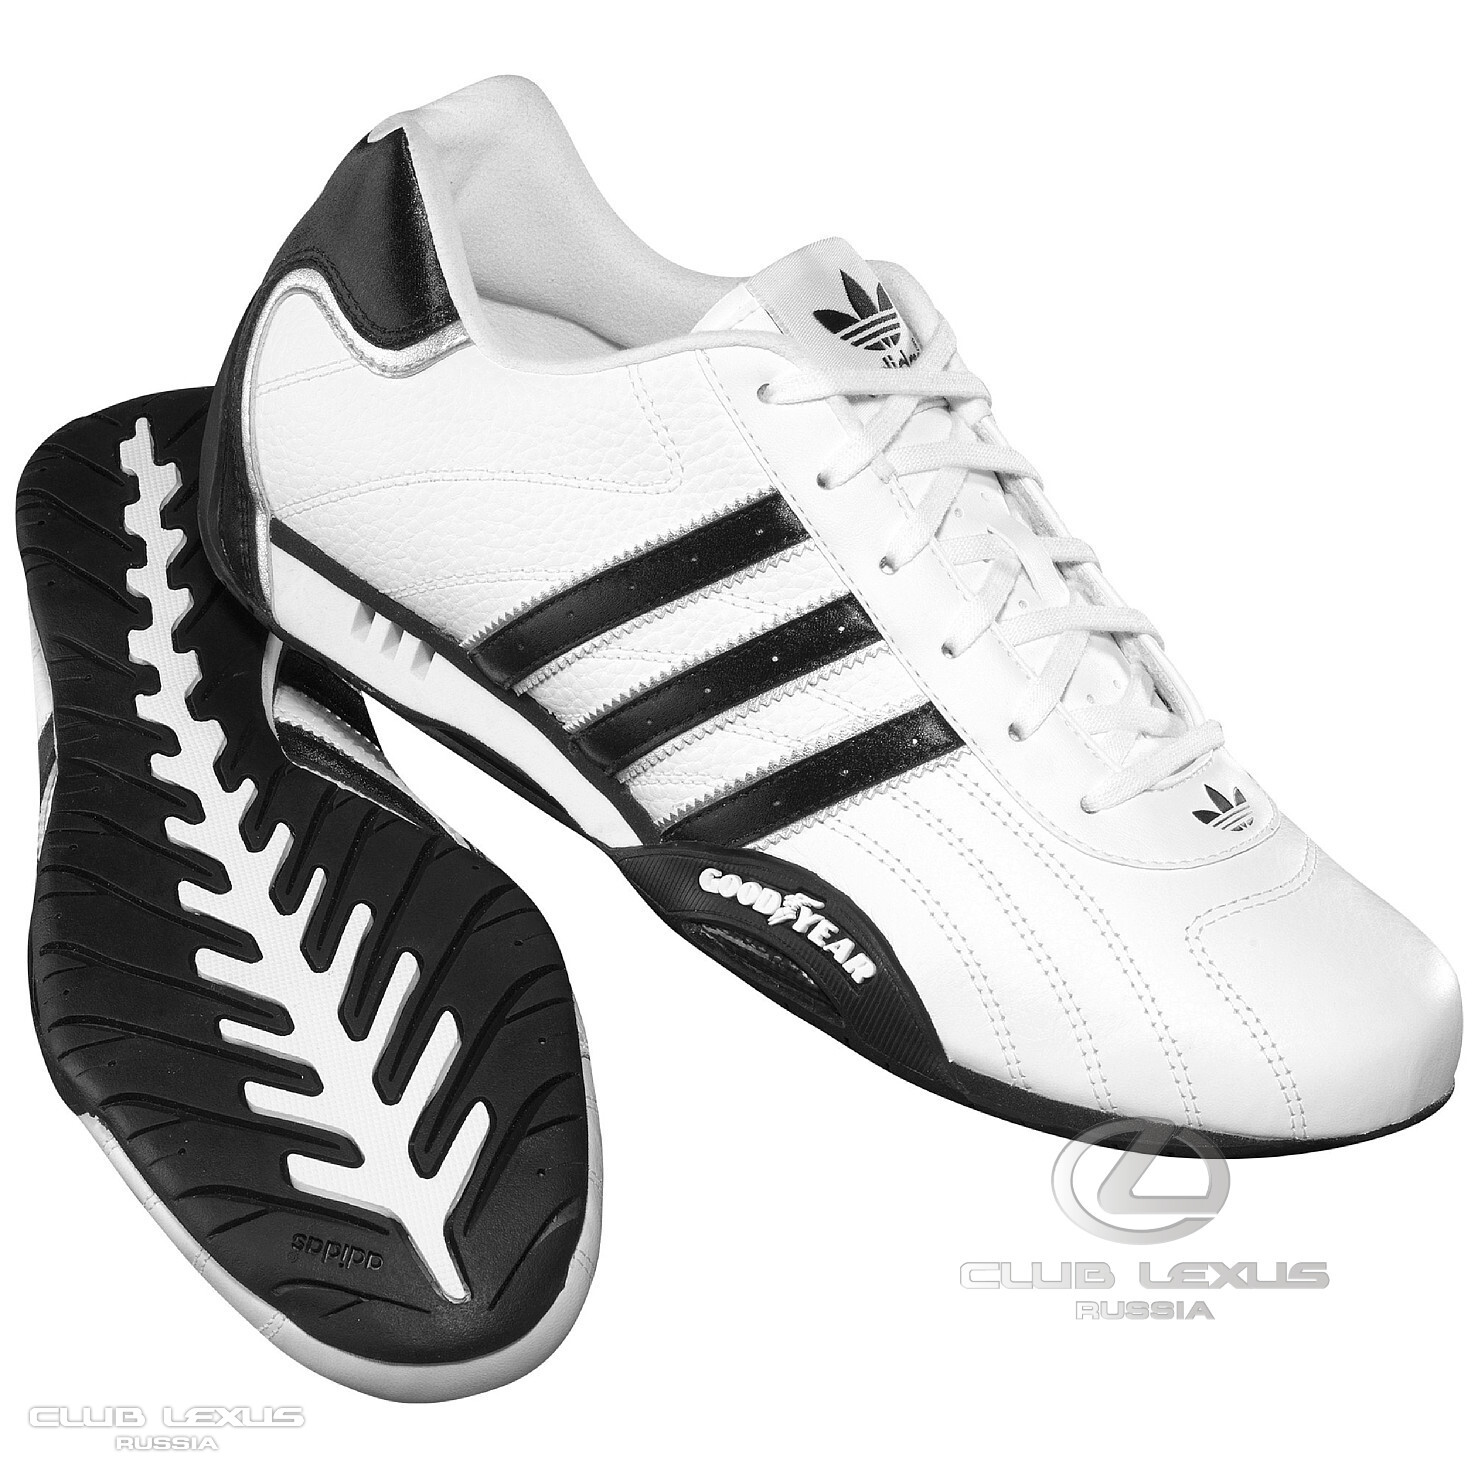 Adidas Goodyear 2005